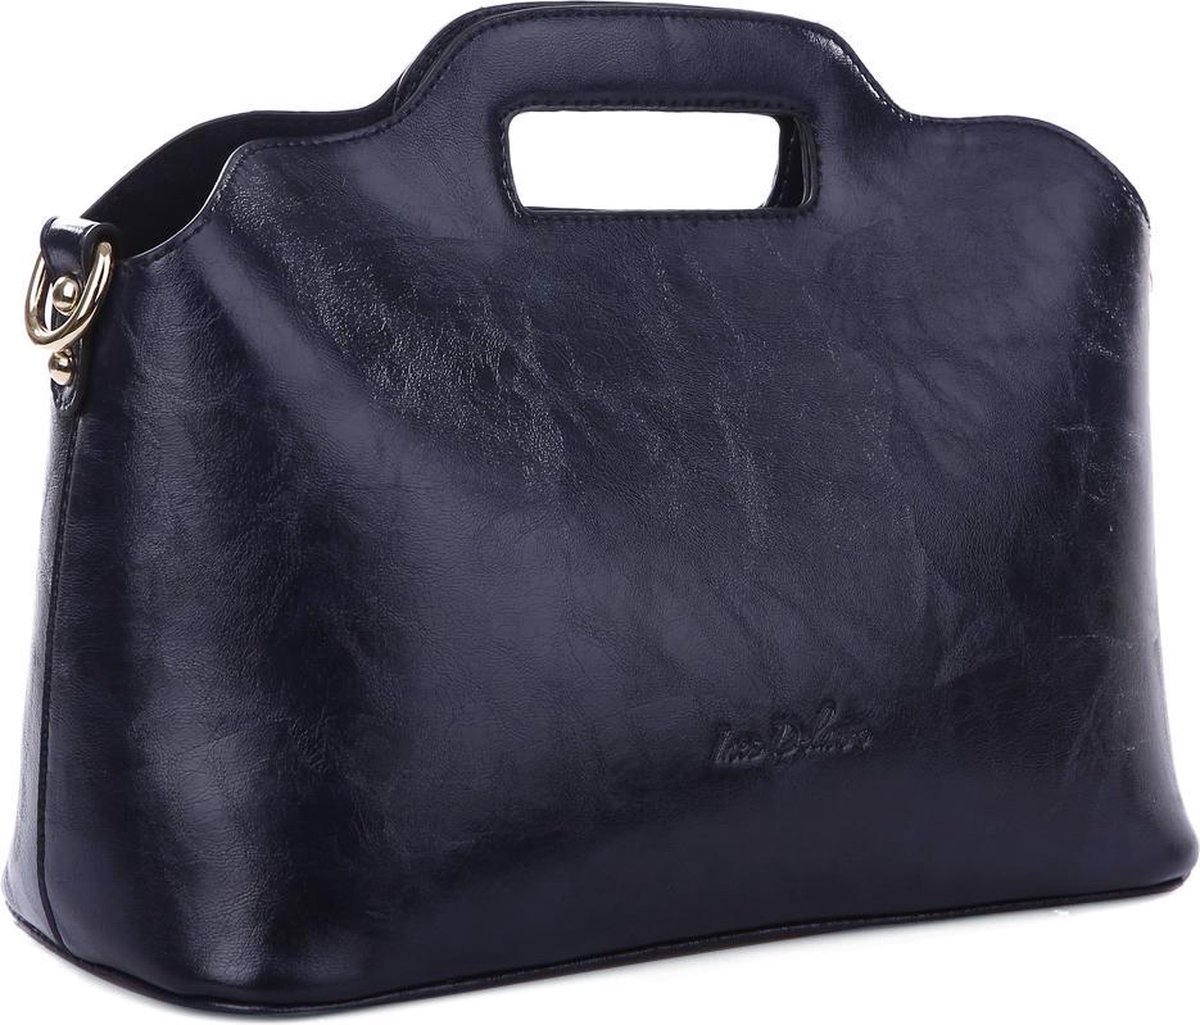 Ines Delaure - Handige tas in tas/bag in bag - handtas/crossbody - donkerblauw